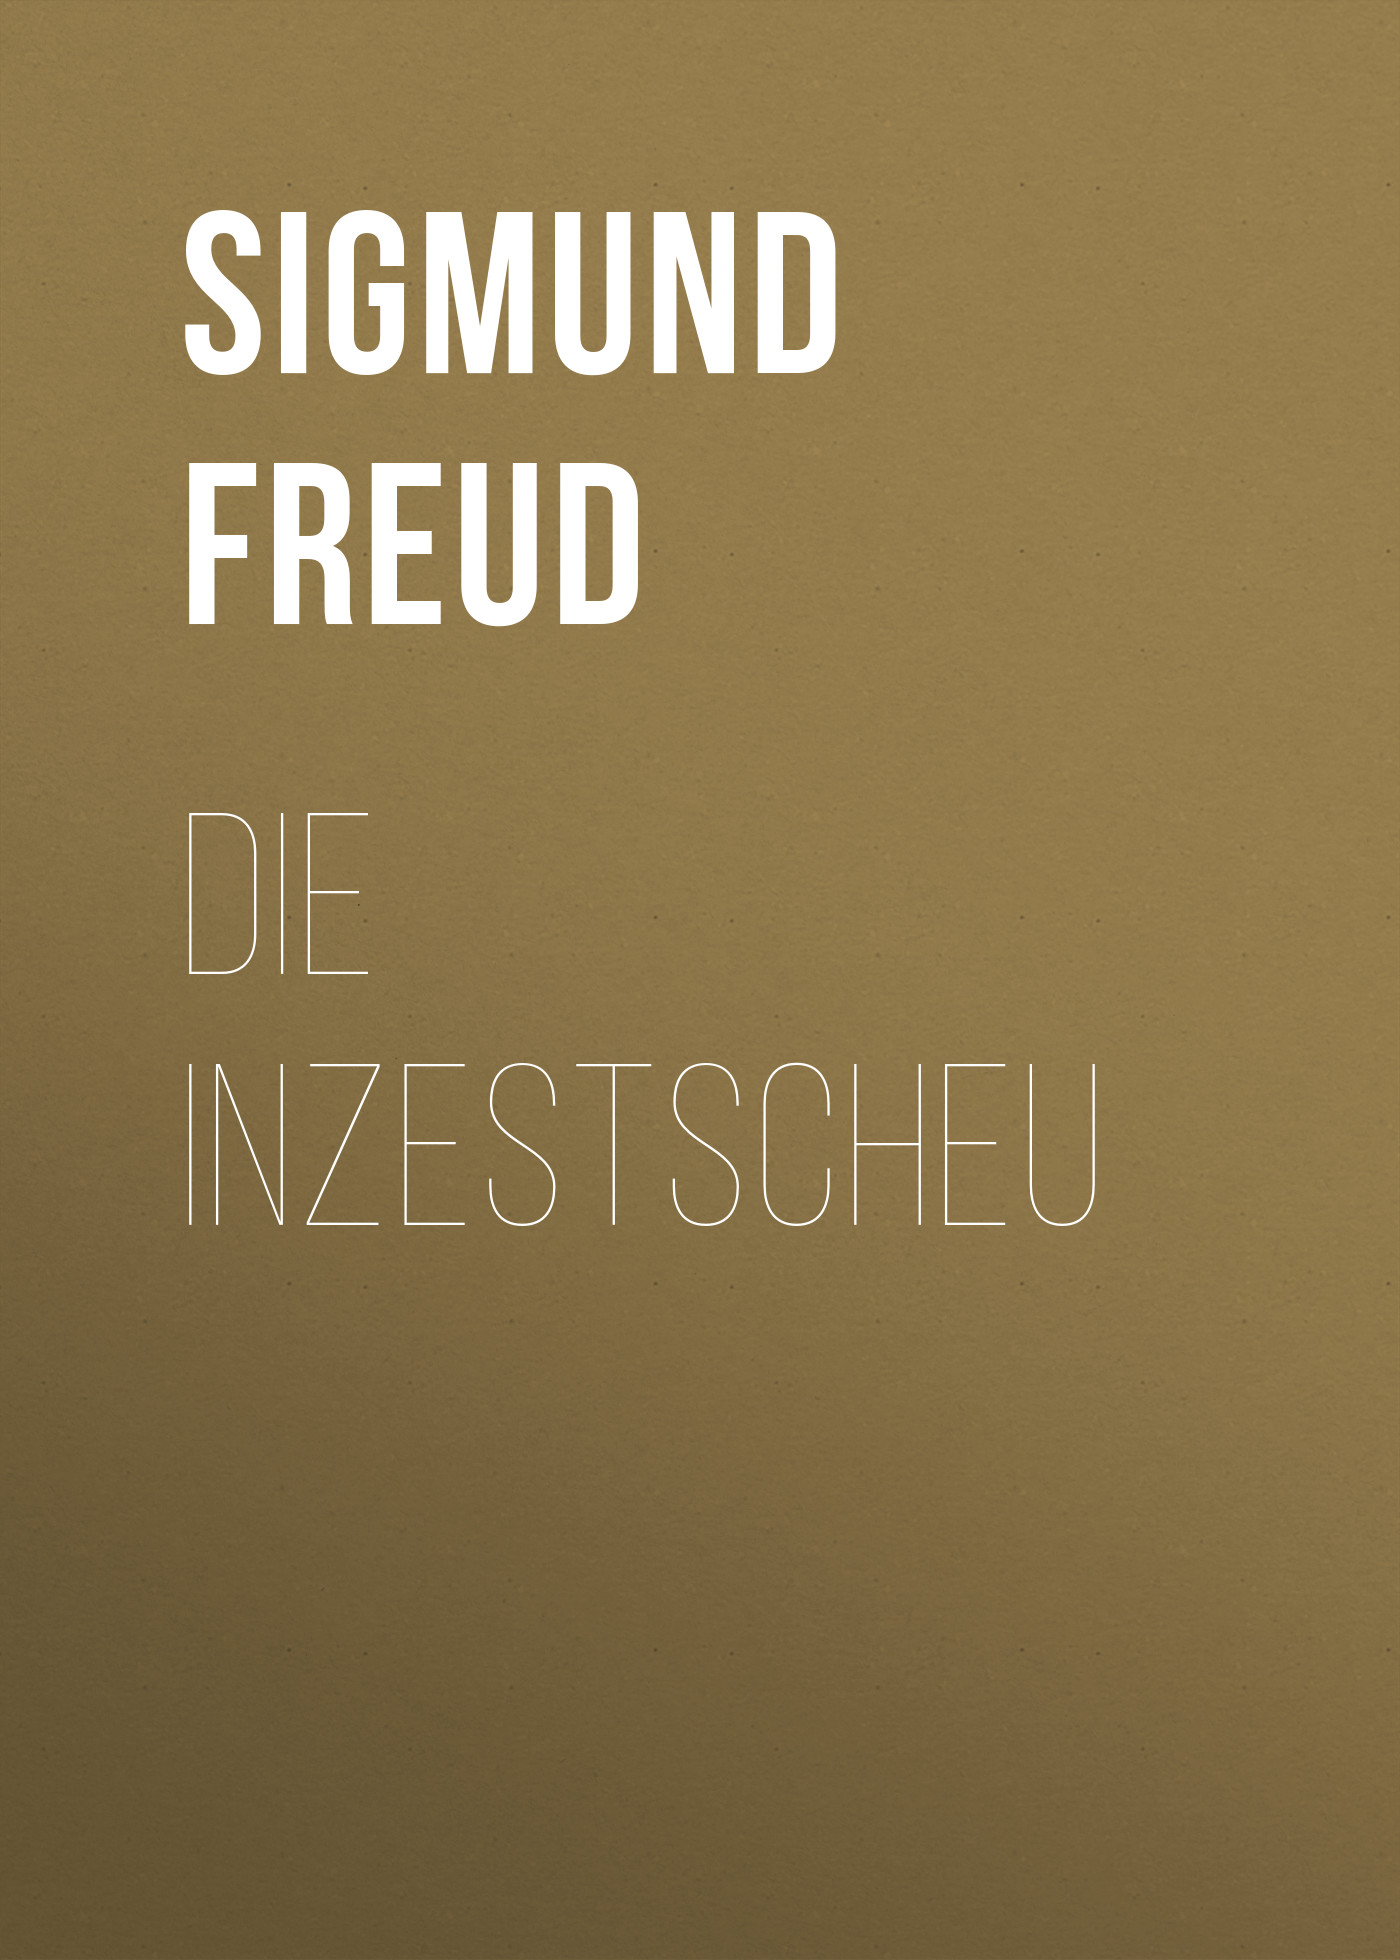 Книга Die Inzestscheu из серии , созданная Sigmund Freud, может относится к жанру Зарубежная старинная литература, Зарубежная классика. Стоимость электронной книги Die Inzestscheu с идентификатором 24860171 составляет 0 руб.